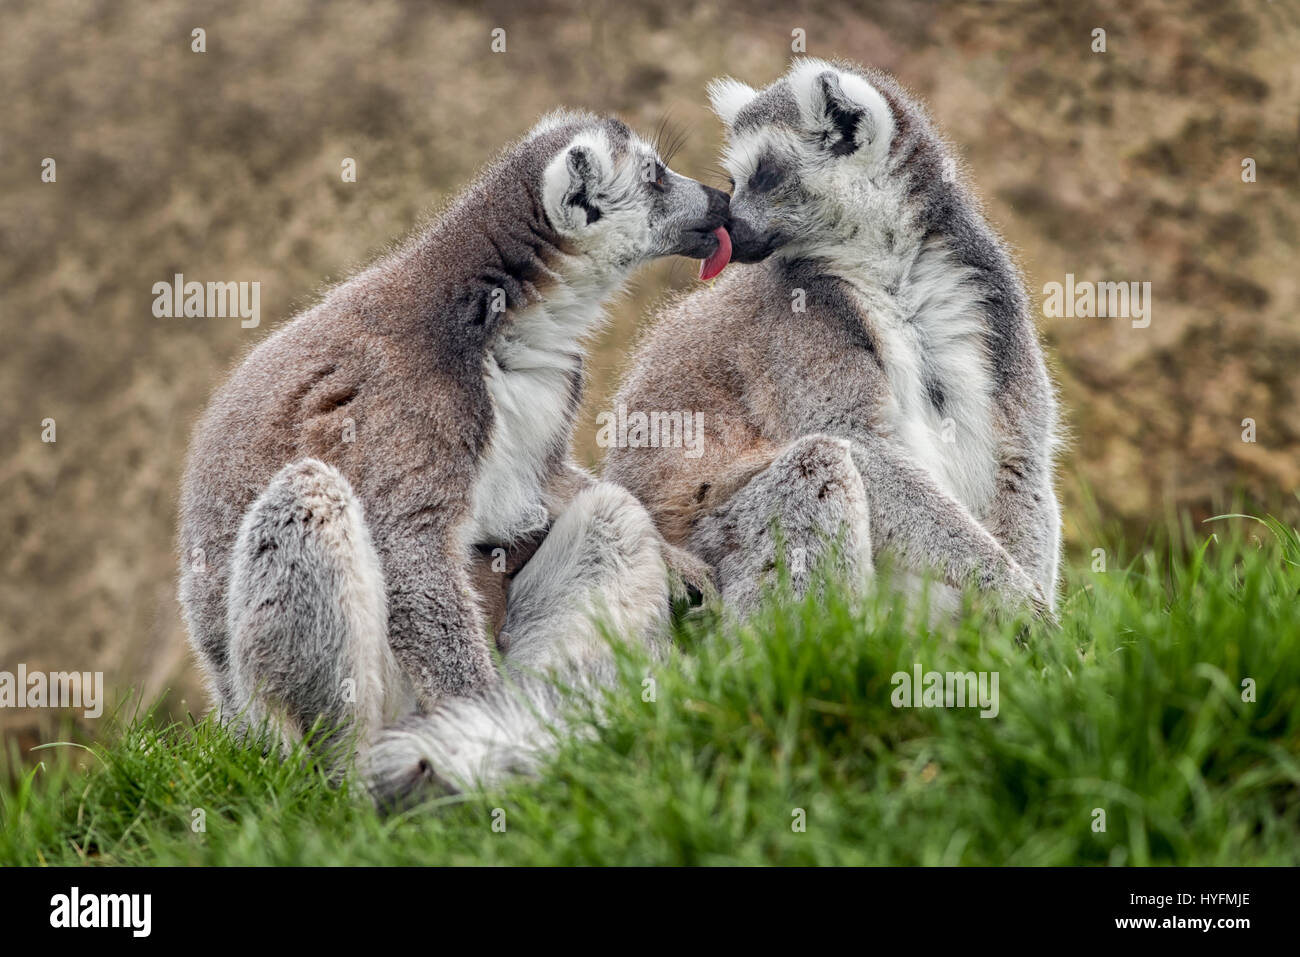 Ein paar Ring tailed Lemuren sitzen auf dem Rasen eine der anderen lecken, als ob sich küssen Stockfoto